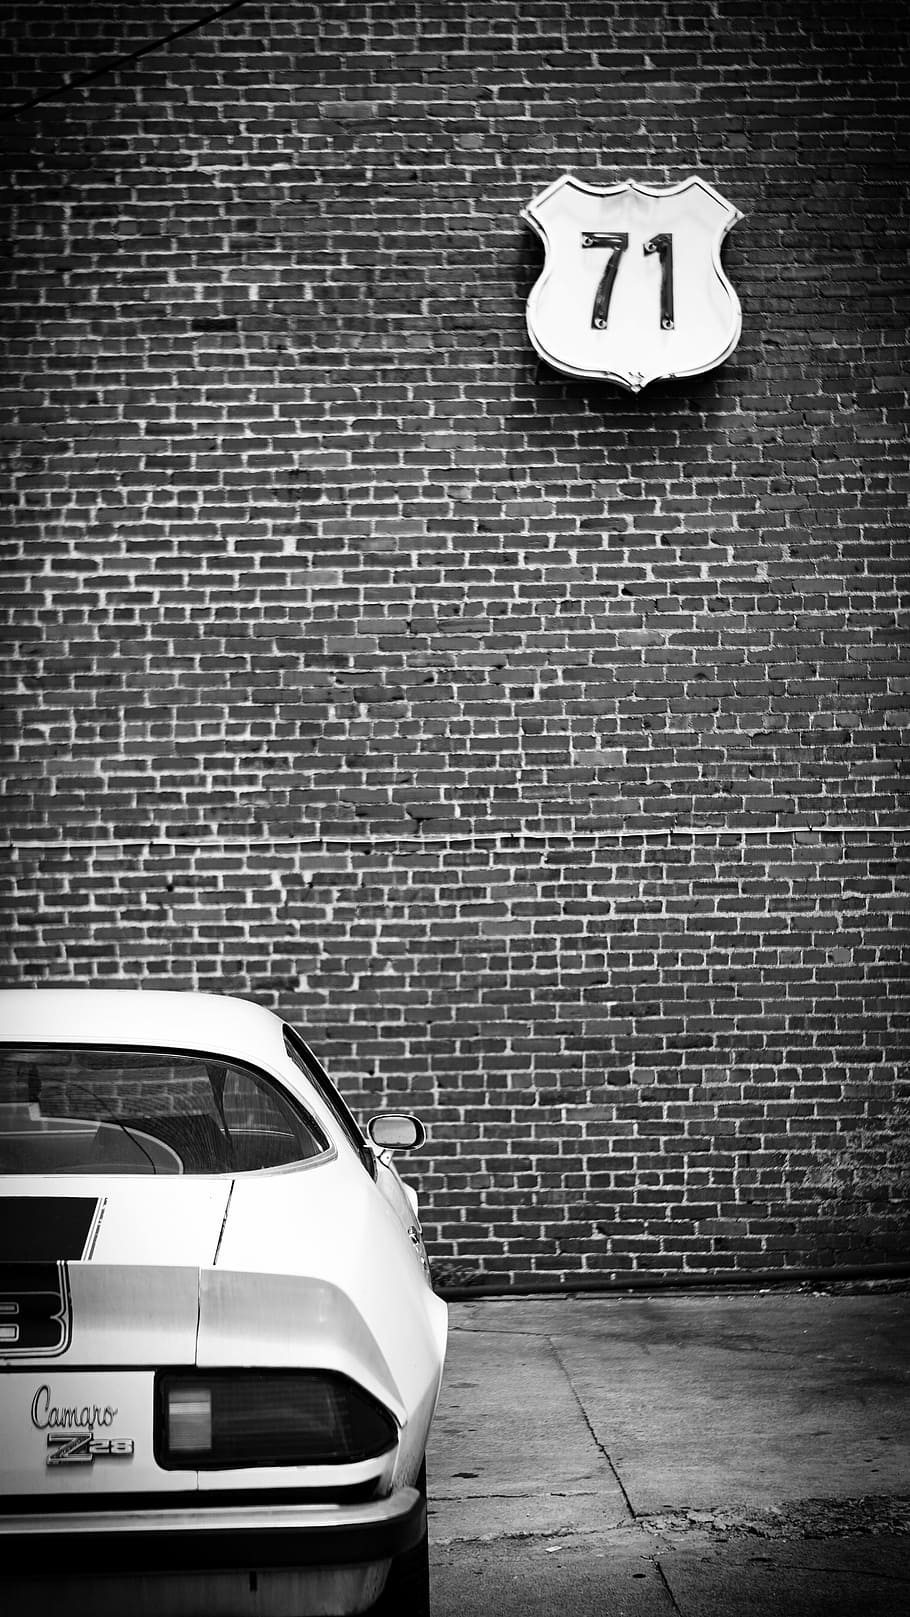 camaro, mobil, hitam dan putih, transportasi, vintage, retro, batu bata, dinding, kota, jalan